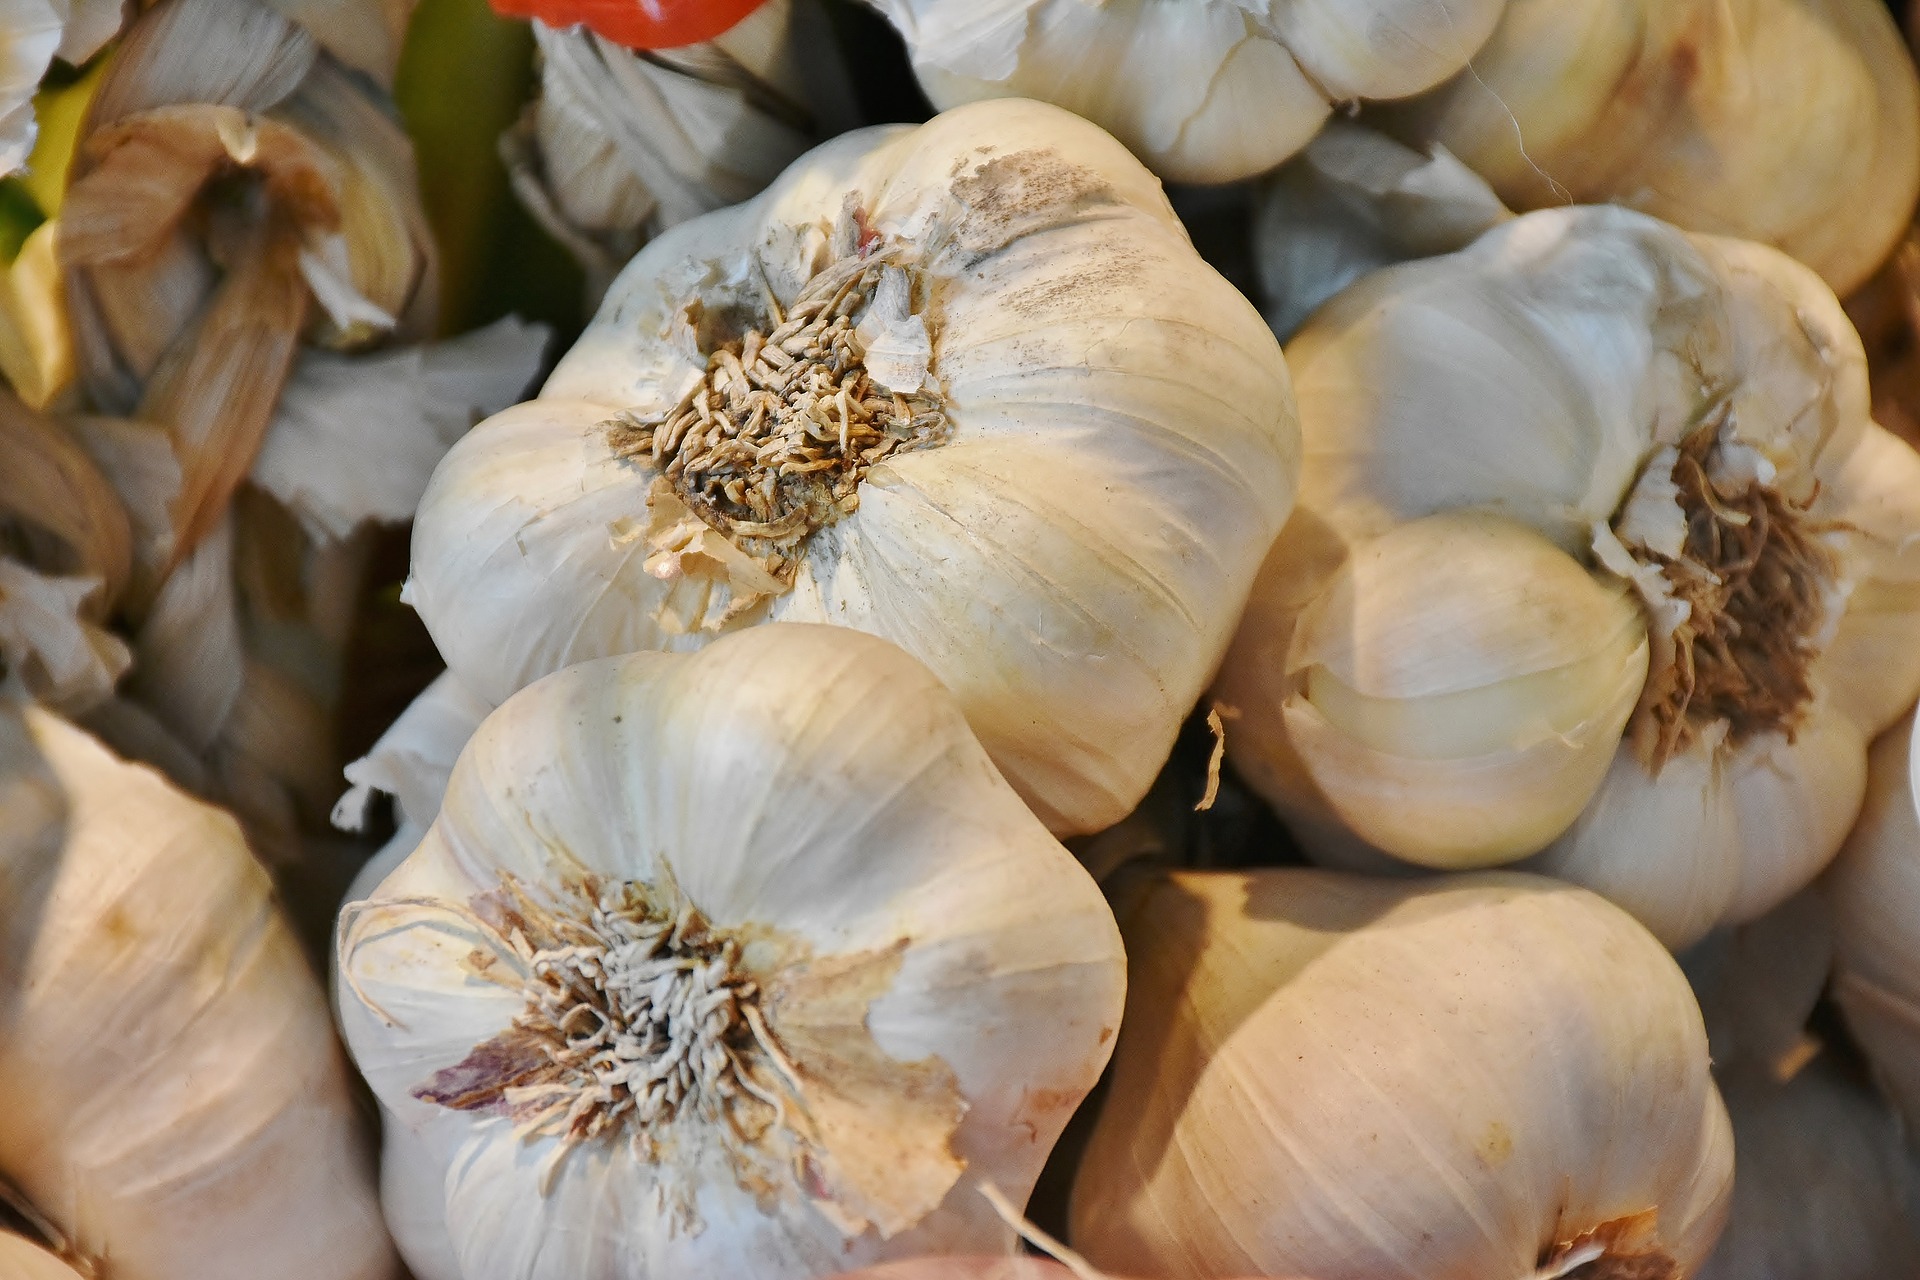 aged garlic flu